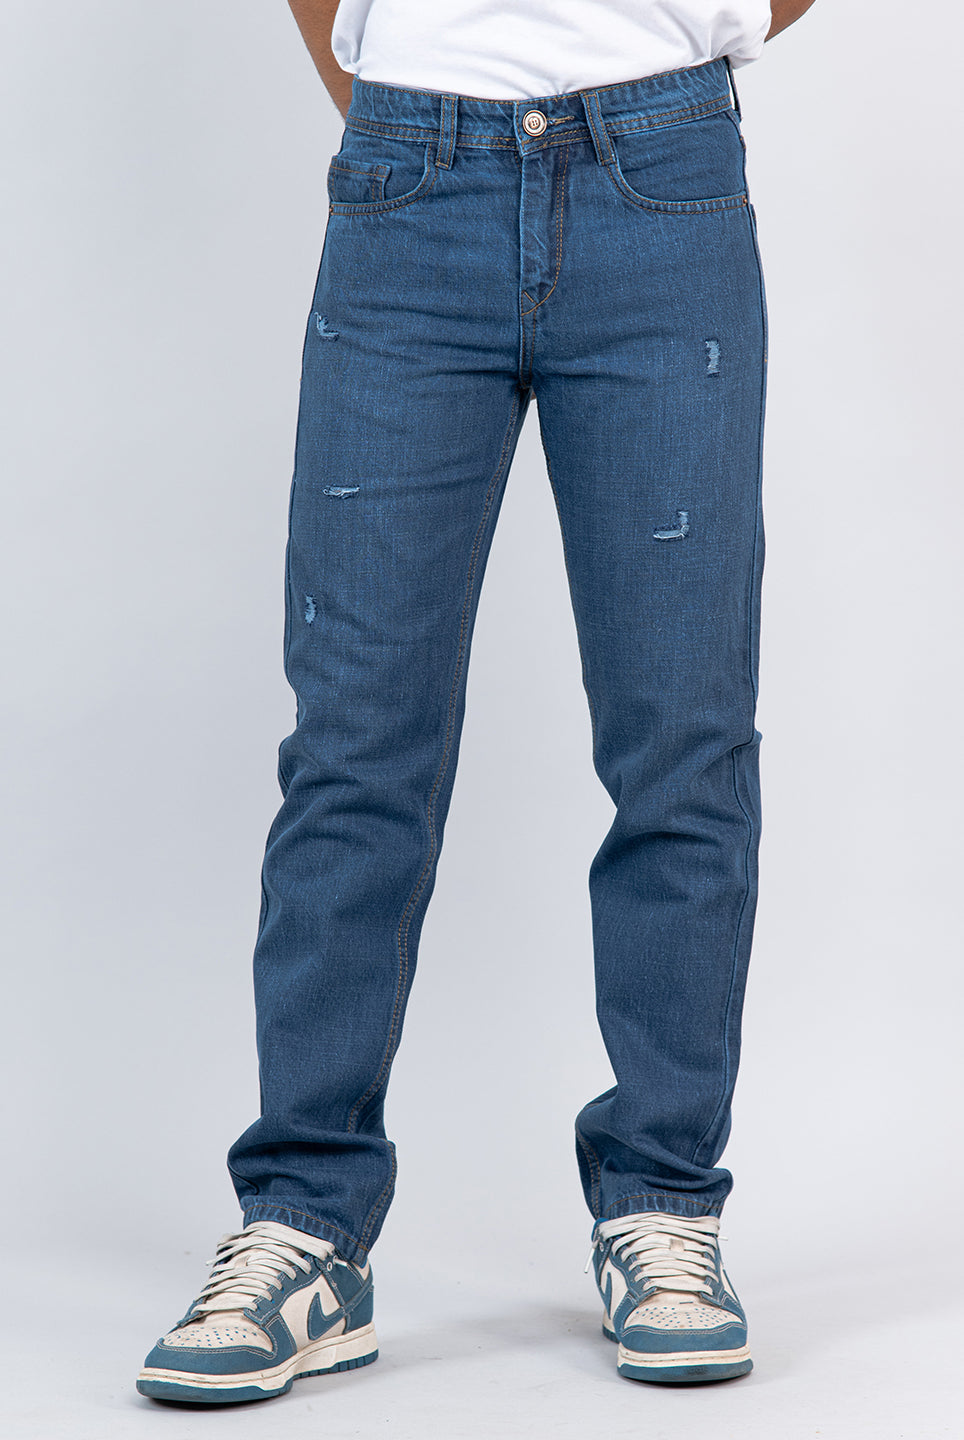 blue jeans for men